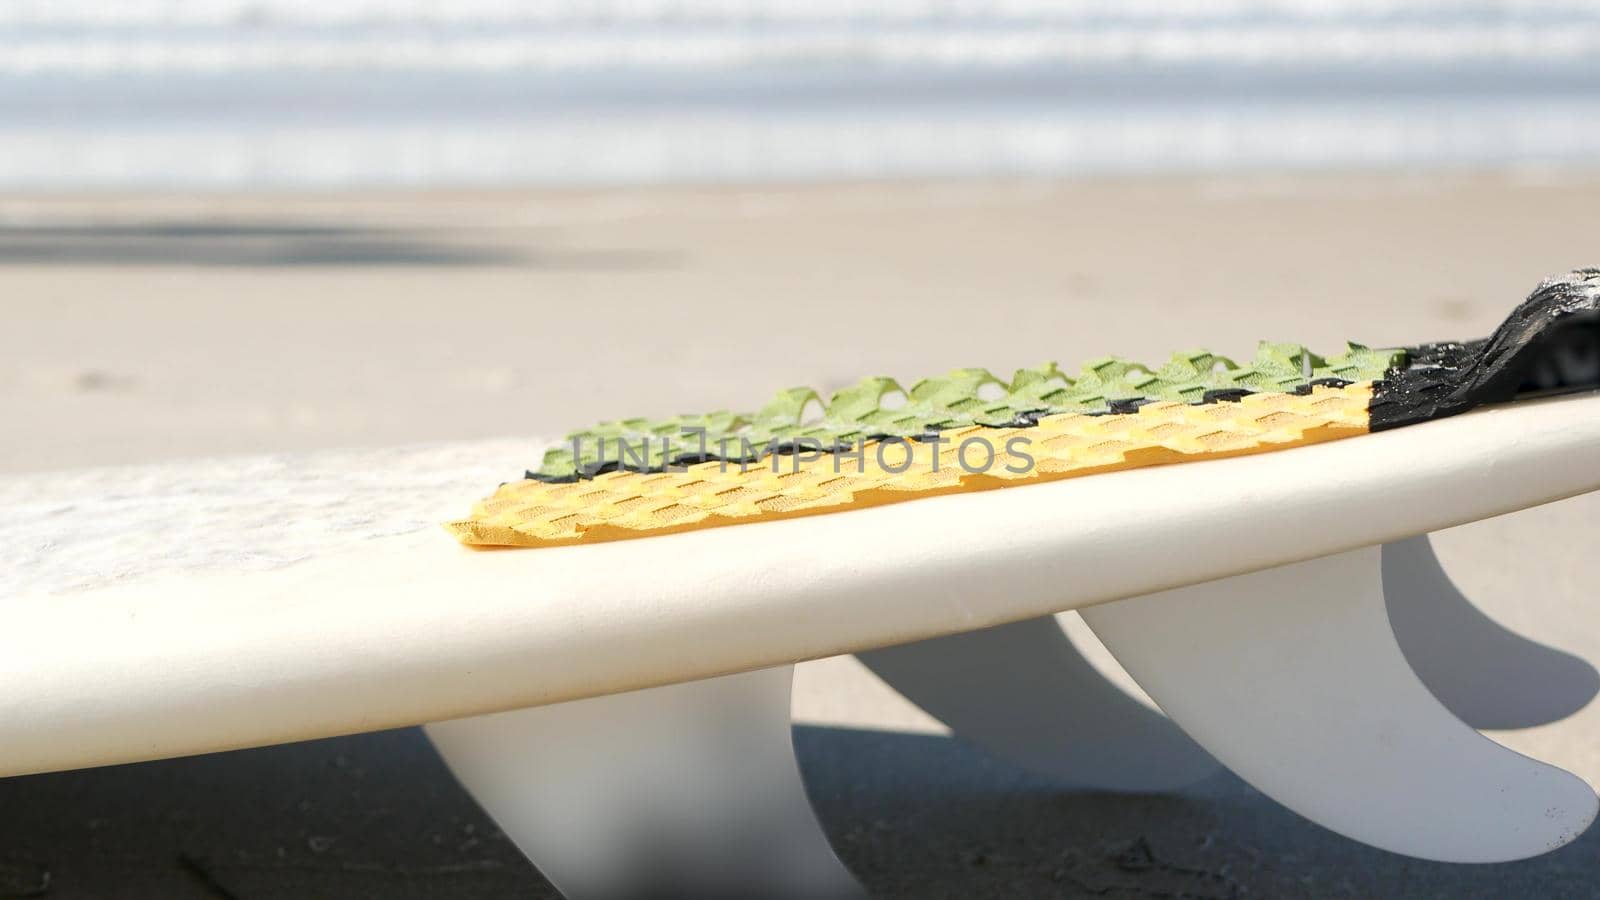 Surfboard for surfing lying on beach sand, California coast, USA. Ocean waves. by DogoraSun